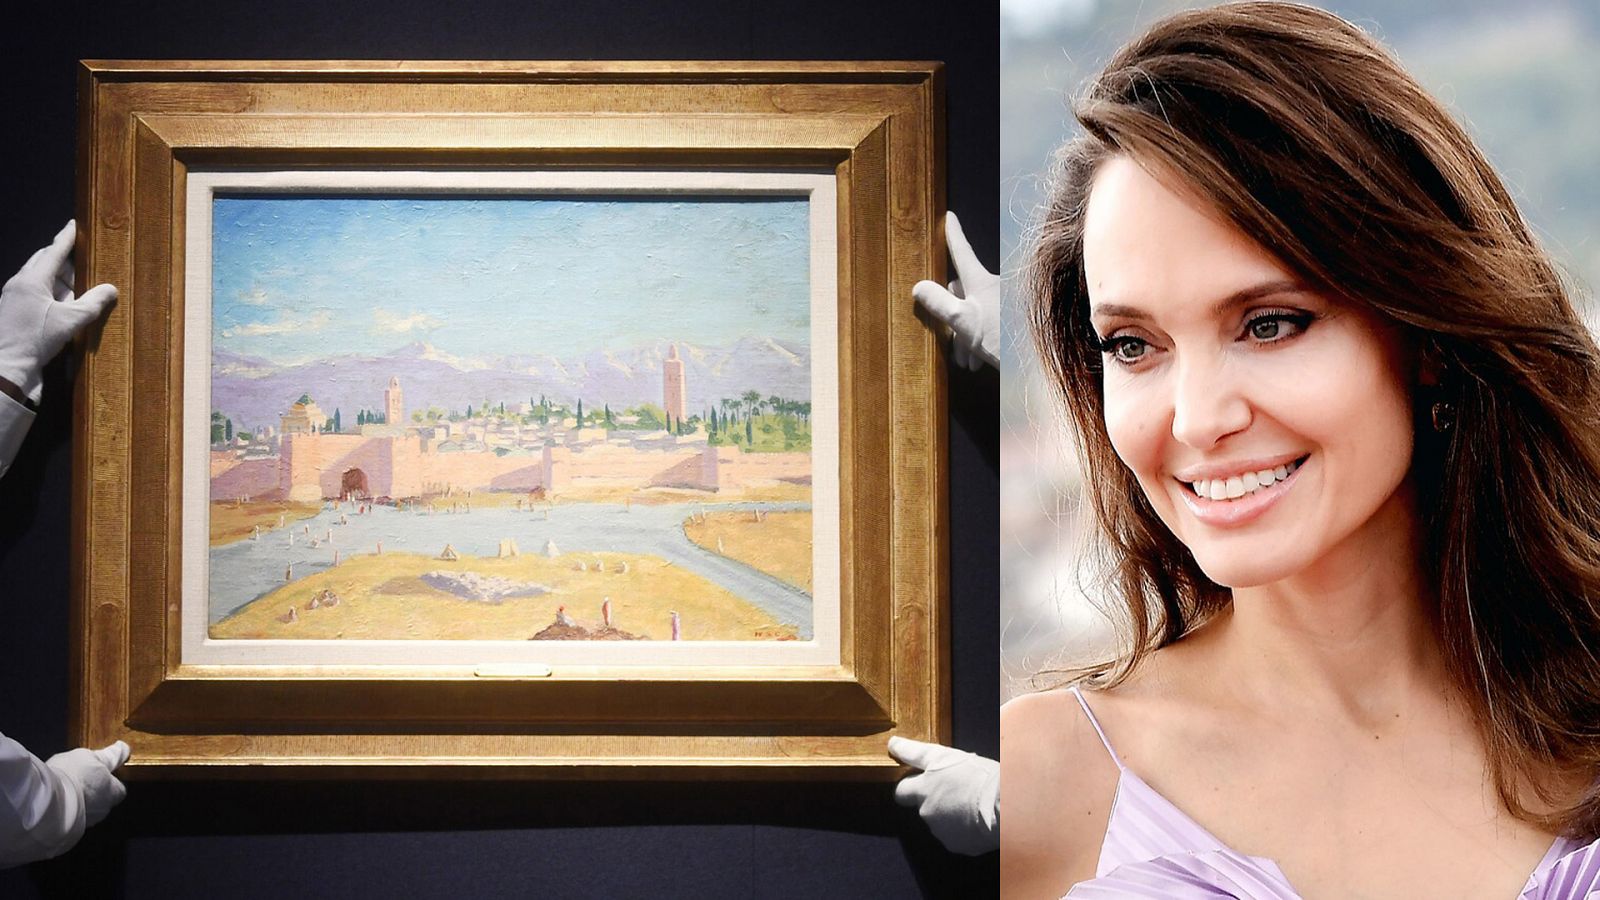 La pintura que hasta hoy atesoraba Jolie, titulada 'Tower of the Koutoubia Mosque', era de gran estima para Churchill.